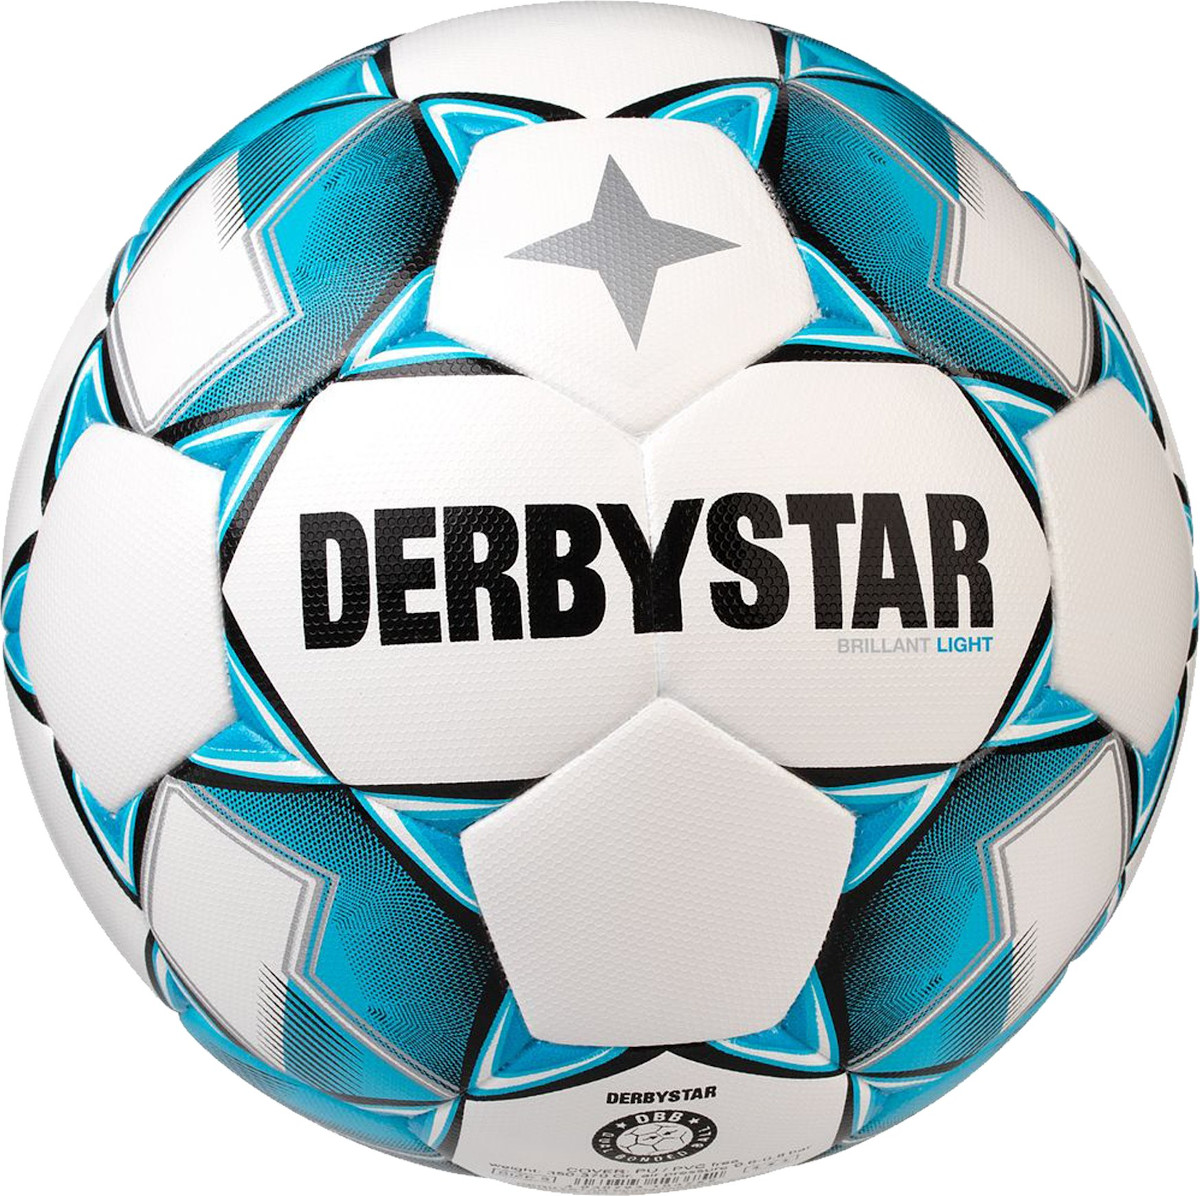 Μπάλα Derbystar Brilliant Light DB v20 350g training ball